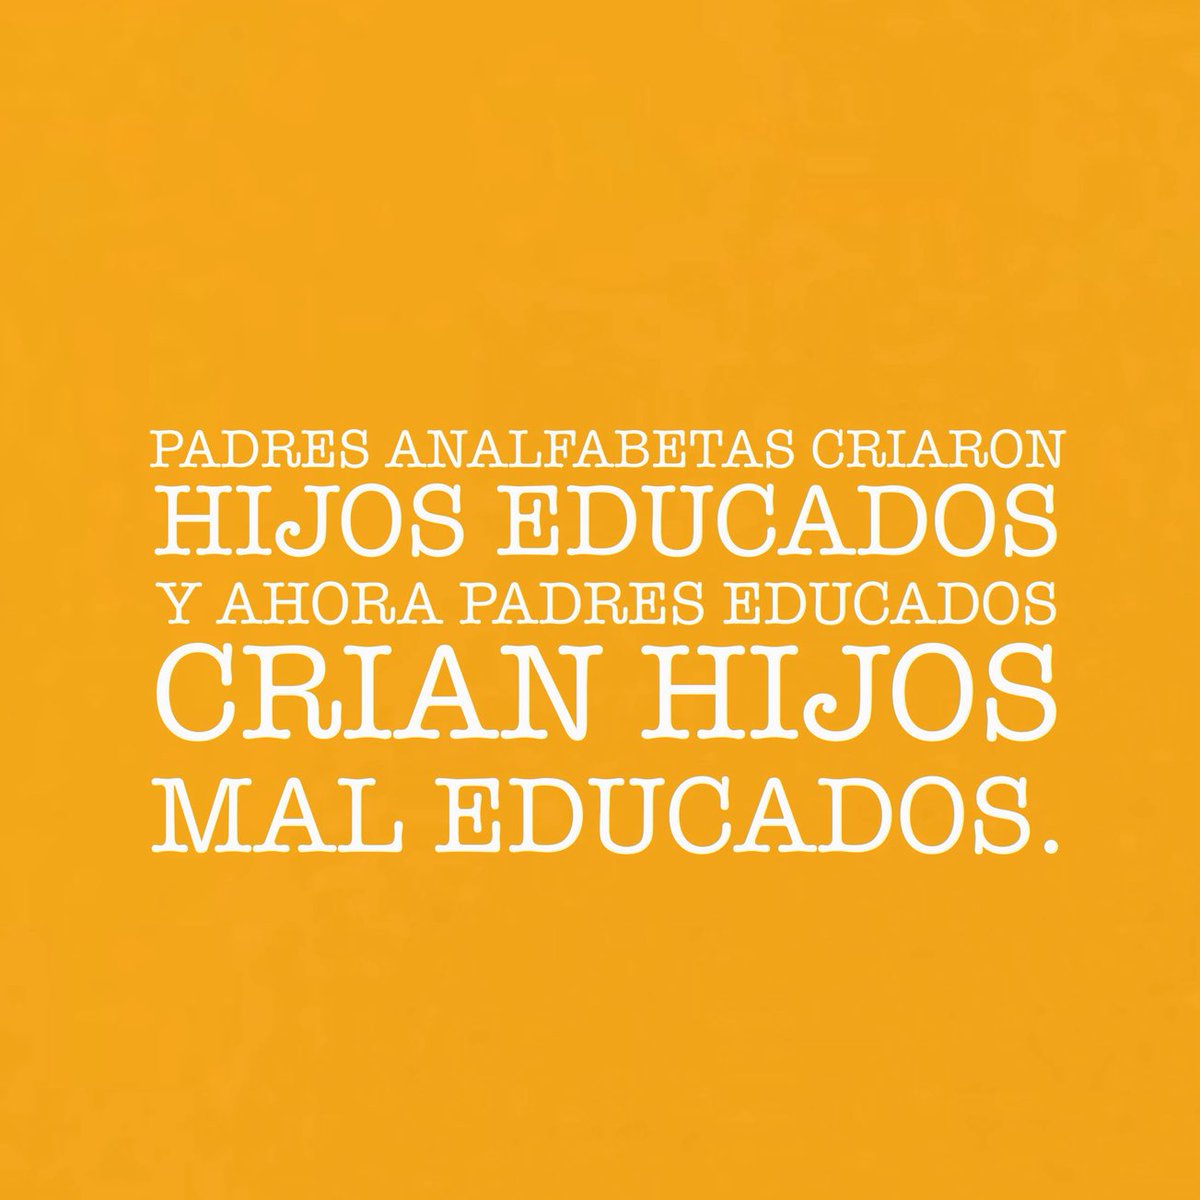 PADRES ANALFABETAS CRIARON HIJOS EDUCADOS Y AHORA PADRES EDUCADOS CRIAN HIJOS MAL EDUCADOS.
.
.
.
#crianza #ejemplo #educacion #poderhumano #amordelbueno #lospapasmodernos #crianzaconsciente #frasesdepadres